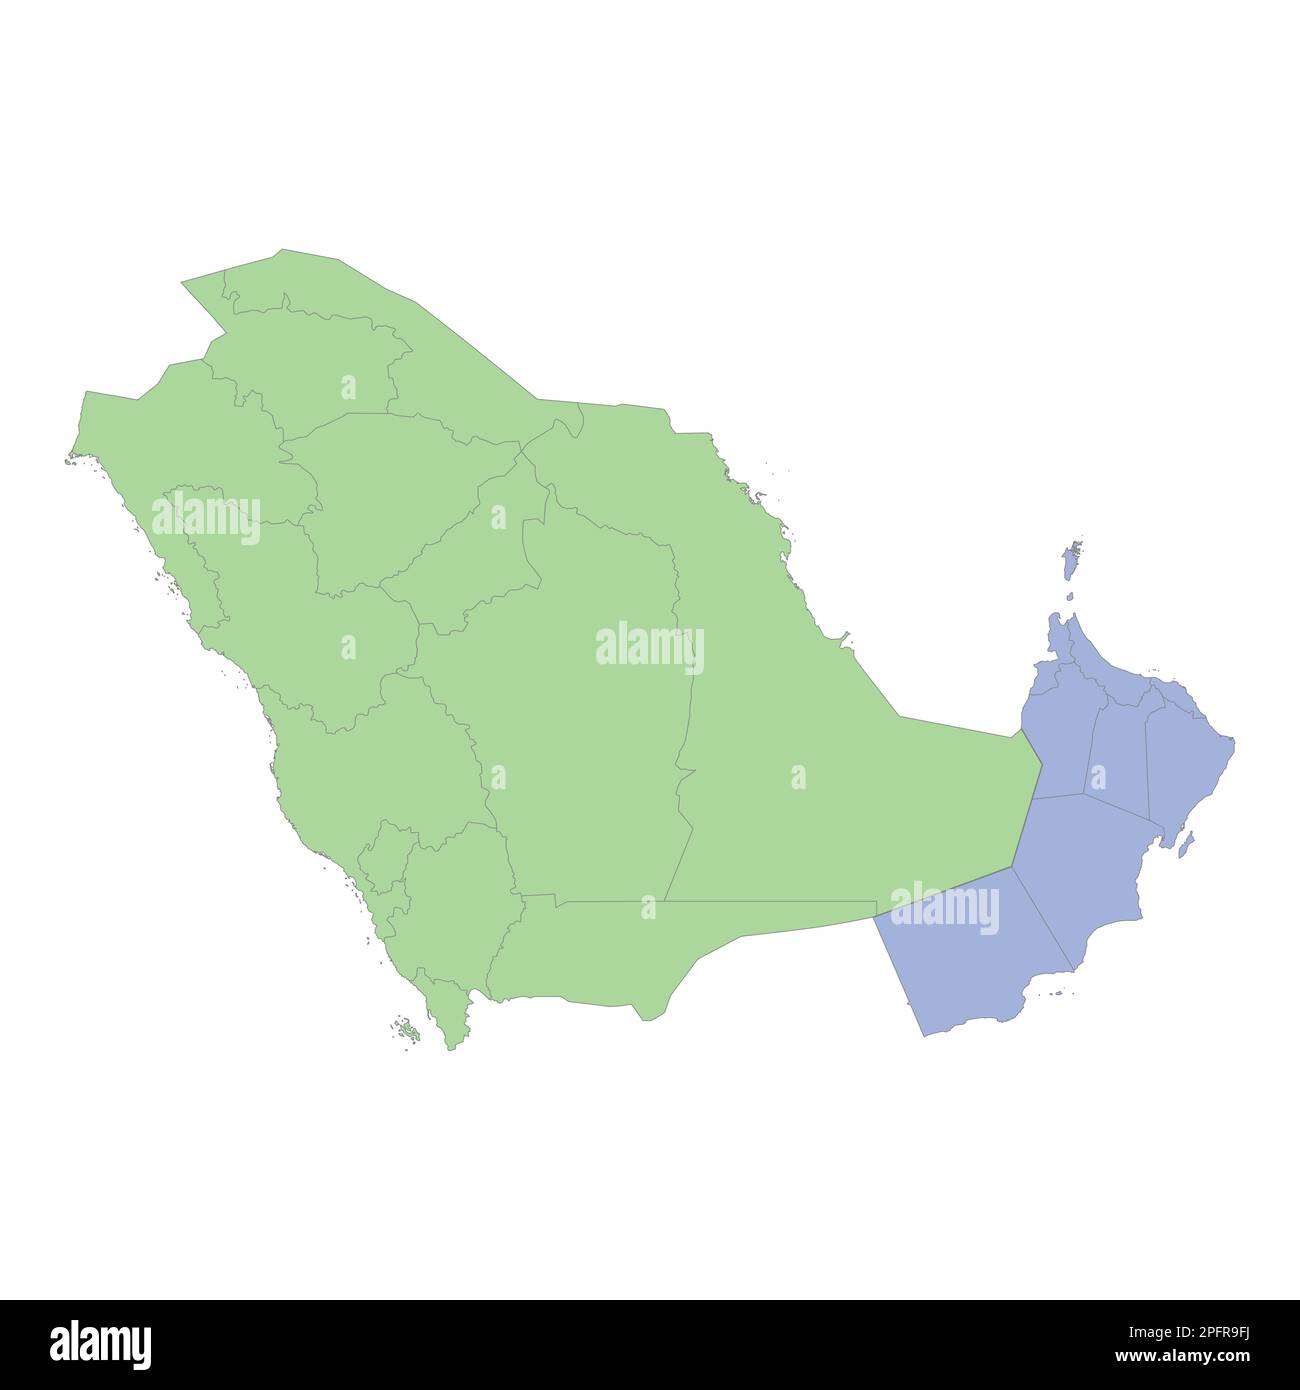 Mappa politica di alta qualità dell'Arabia Saudita e dell'Oman con i confini delle regioni o delle province. Illustrazione vettoriale Illustrazione Vettoriale